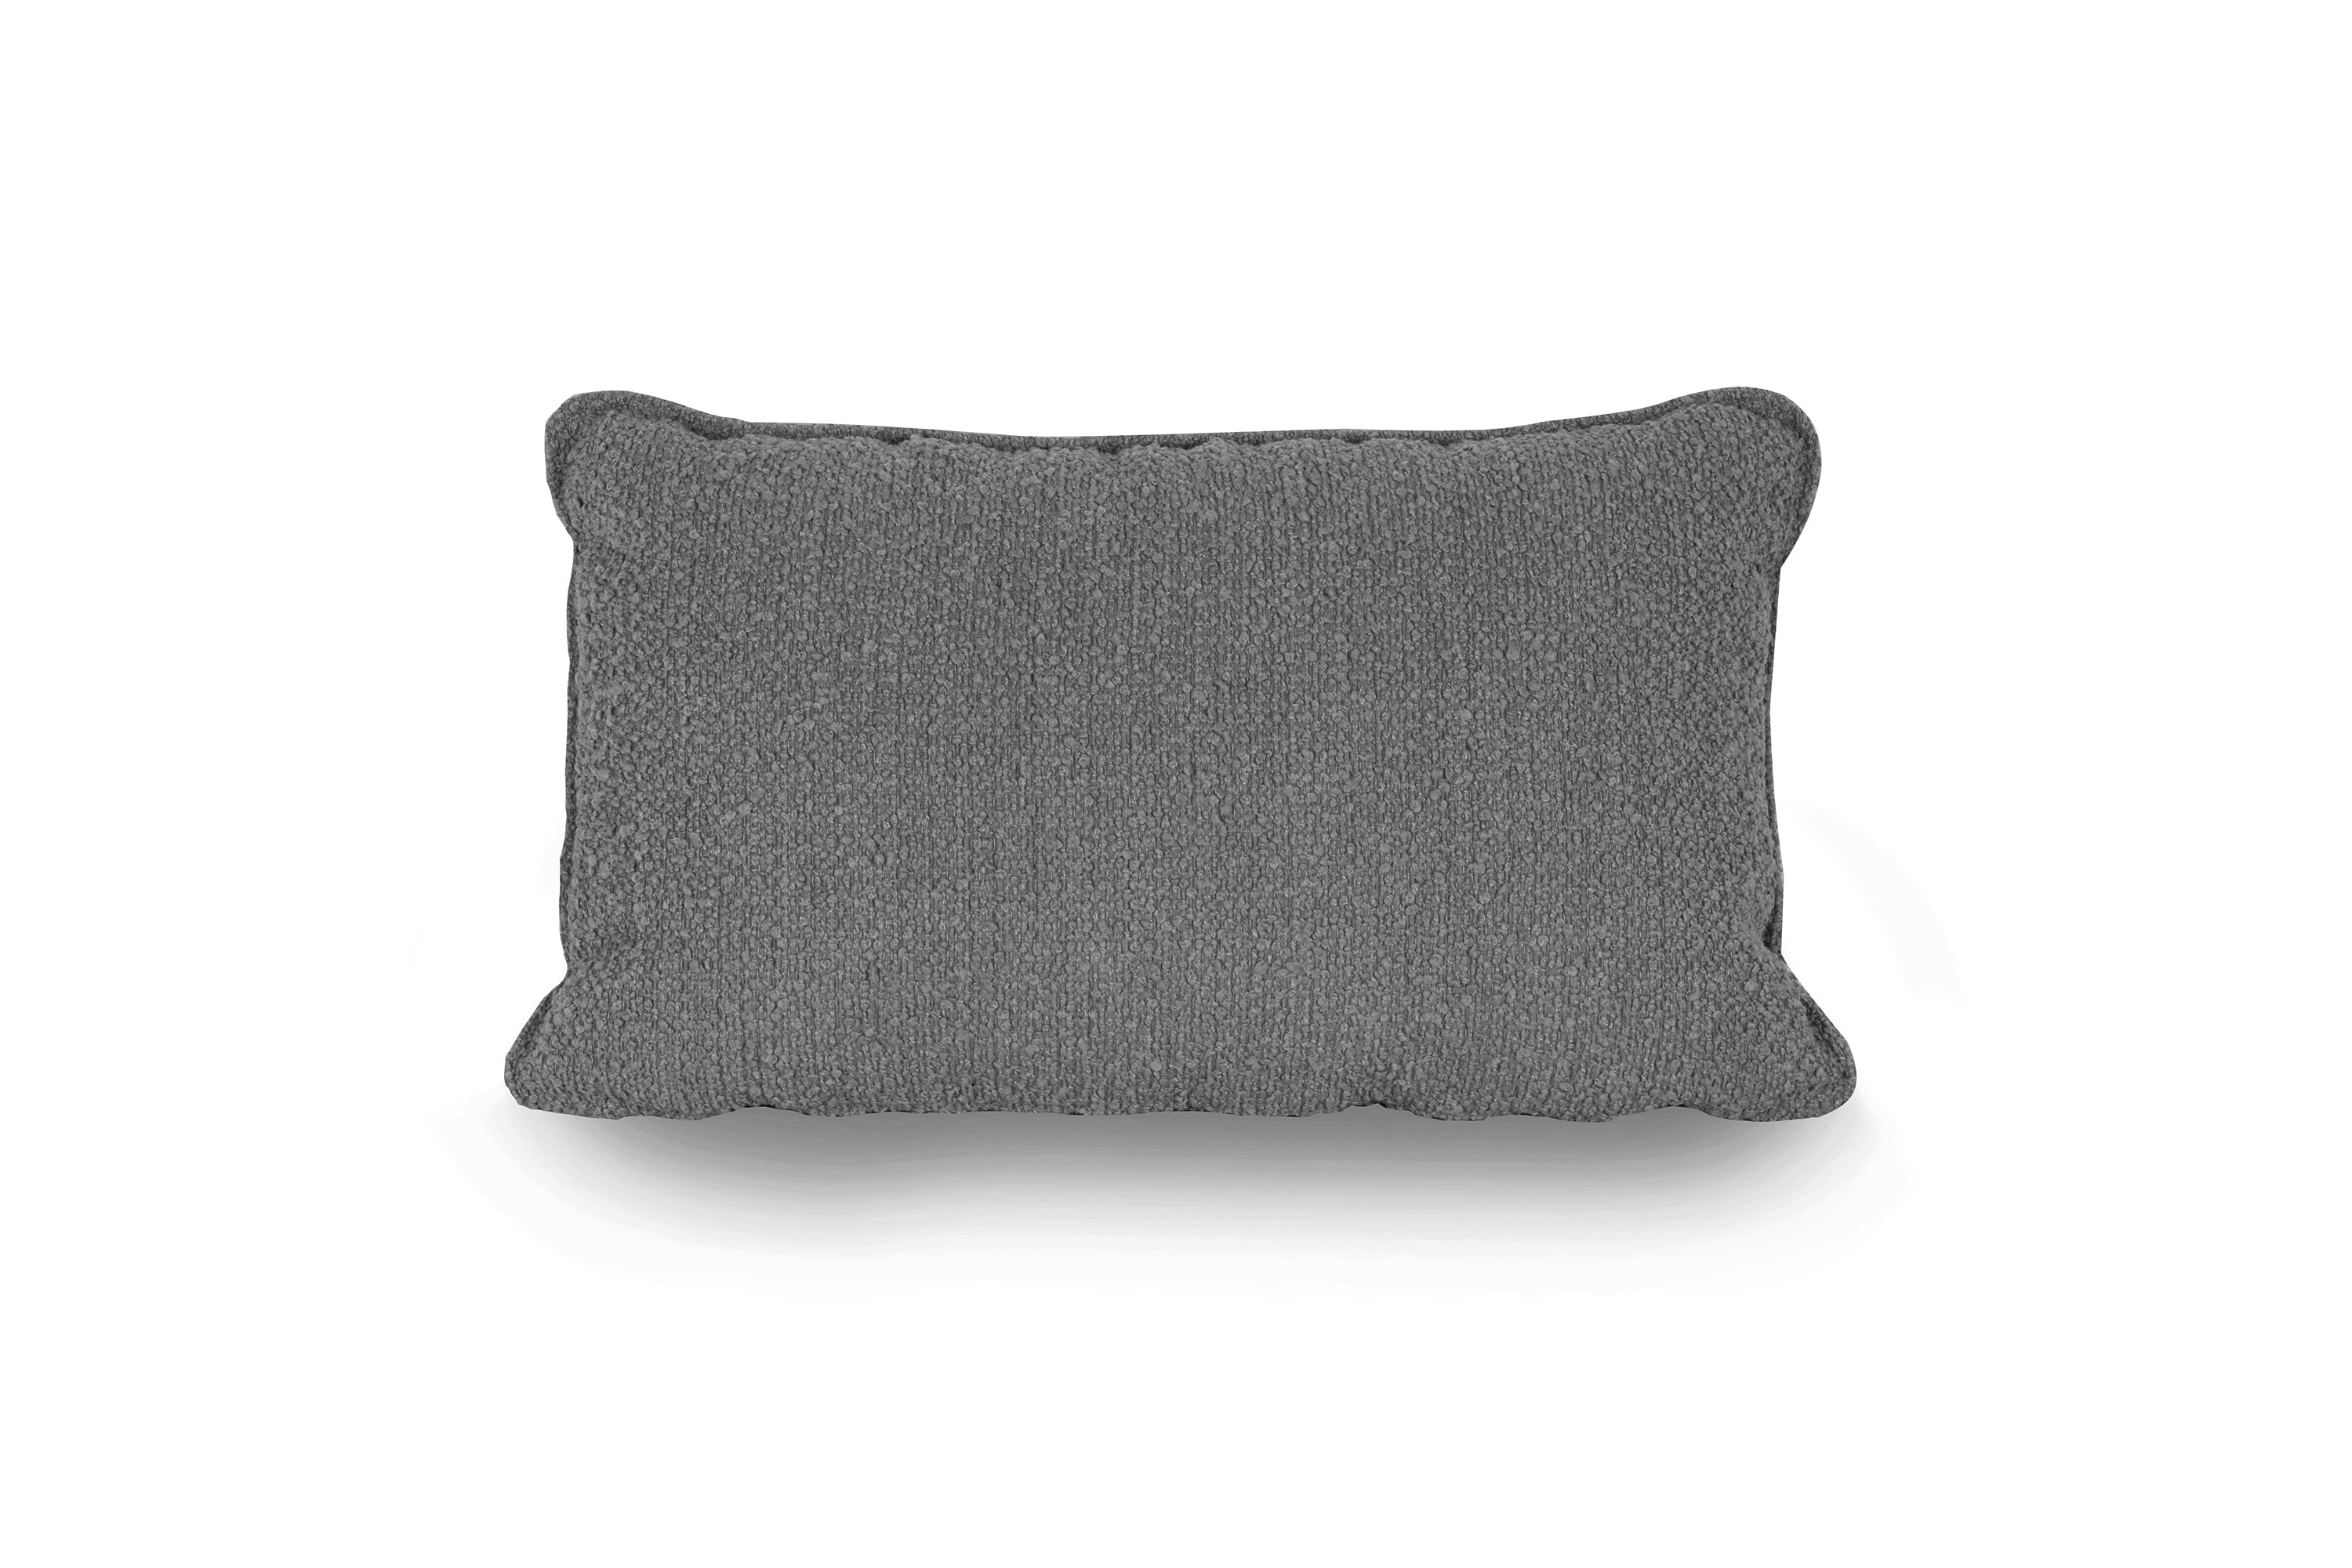 TWIN cushions. Bouclé